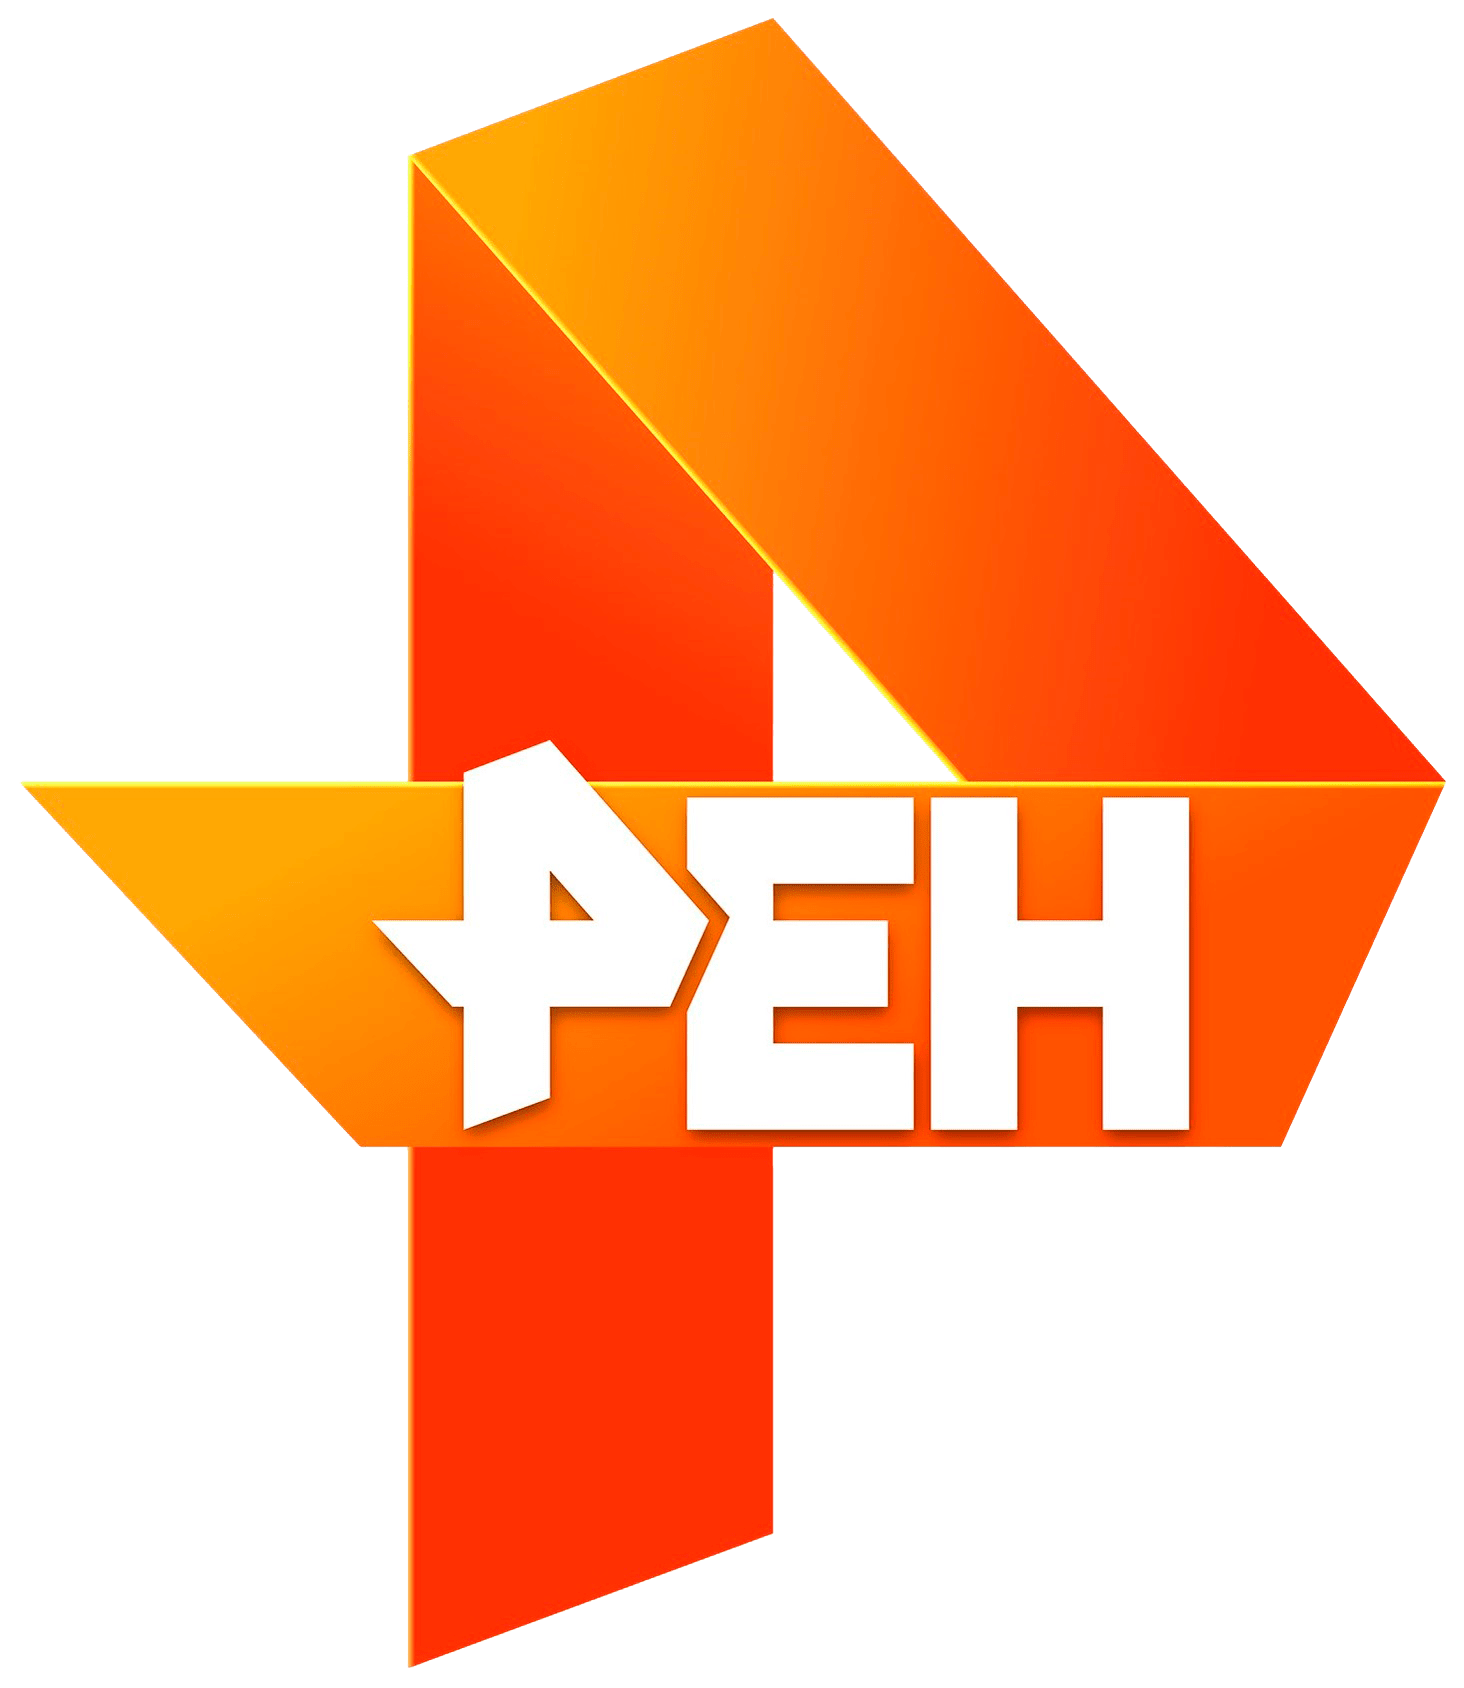 Раземщение рекламы РЕН ТВ, г.Оренбург